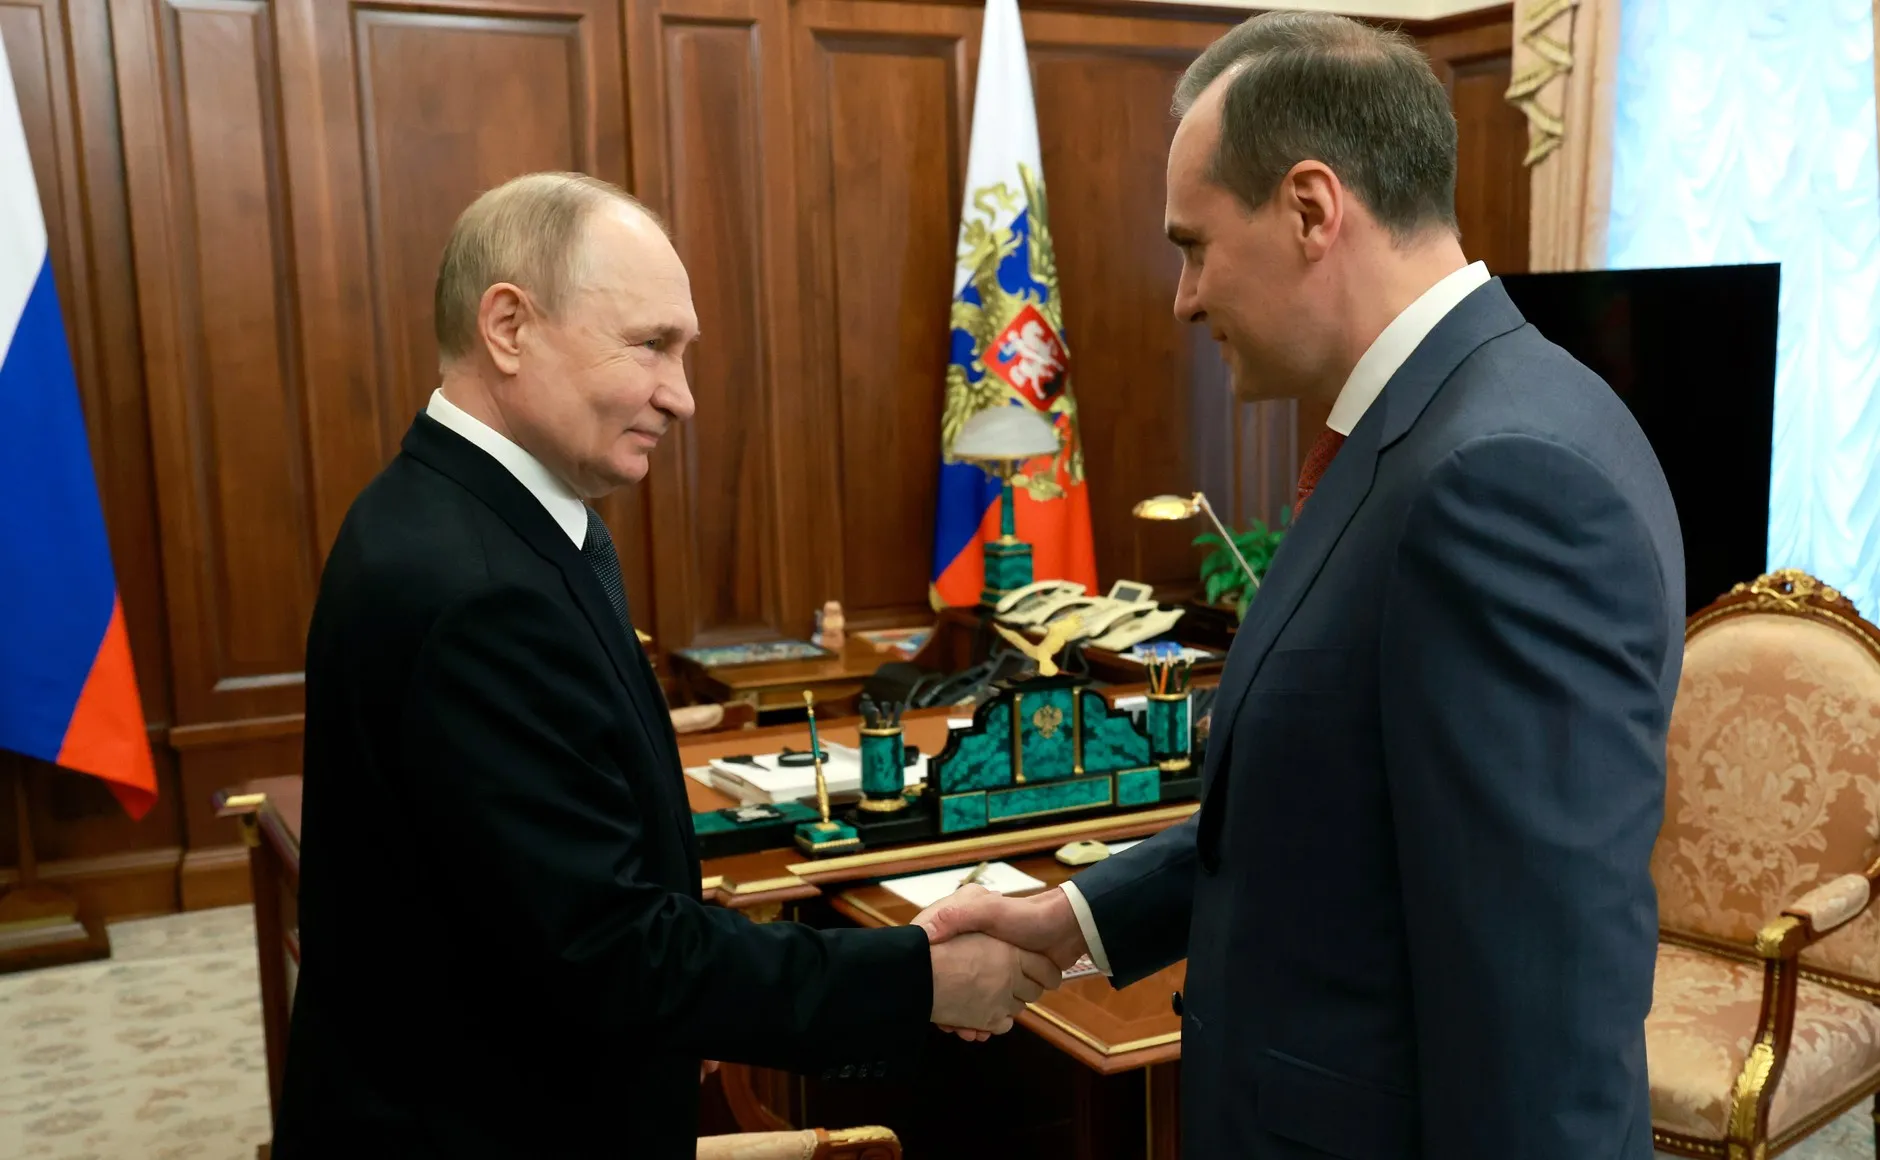 "Теперь это не дотационный регион": Политолог оценила итоги встречи Путина с главой Мордовии